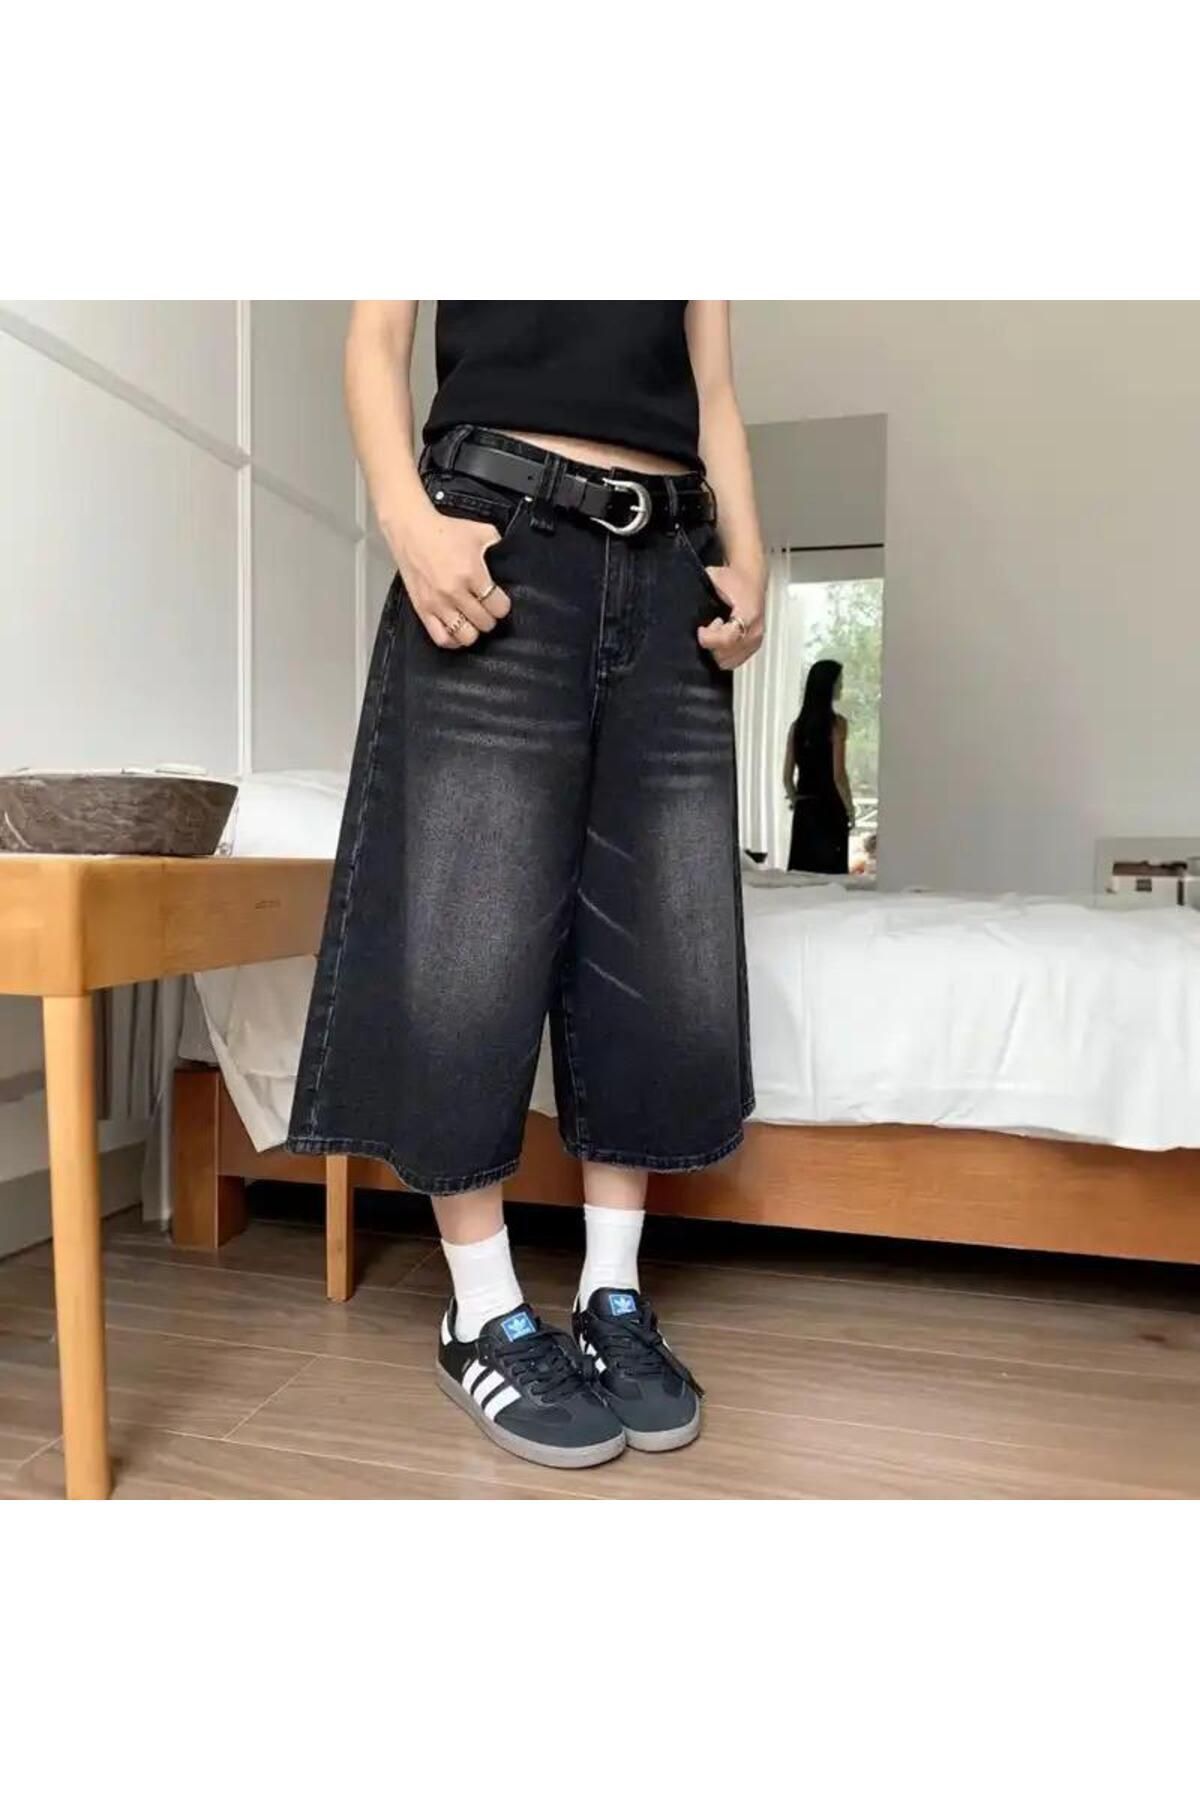 Köstebek Siyah Yıkamalı Retro Kısa Paçalı Kot Pantolon